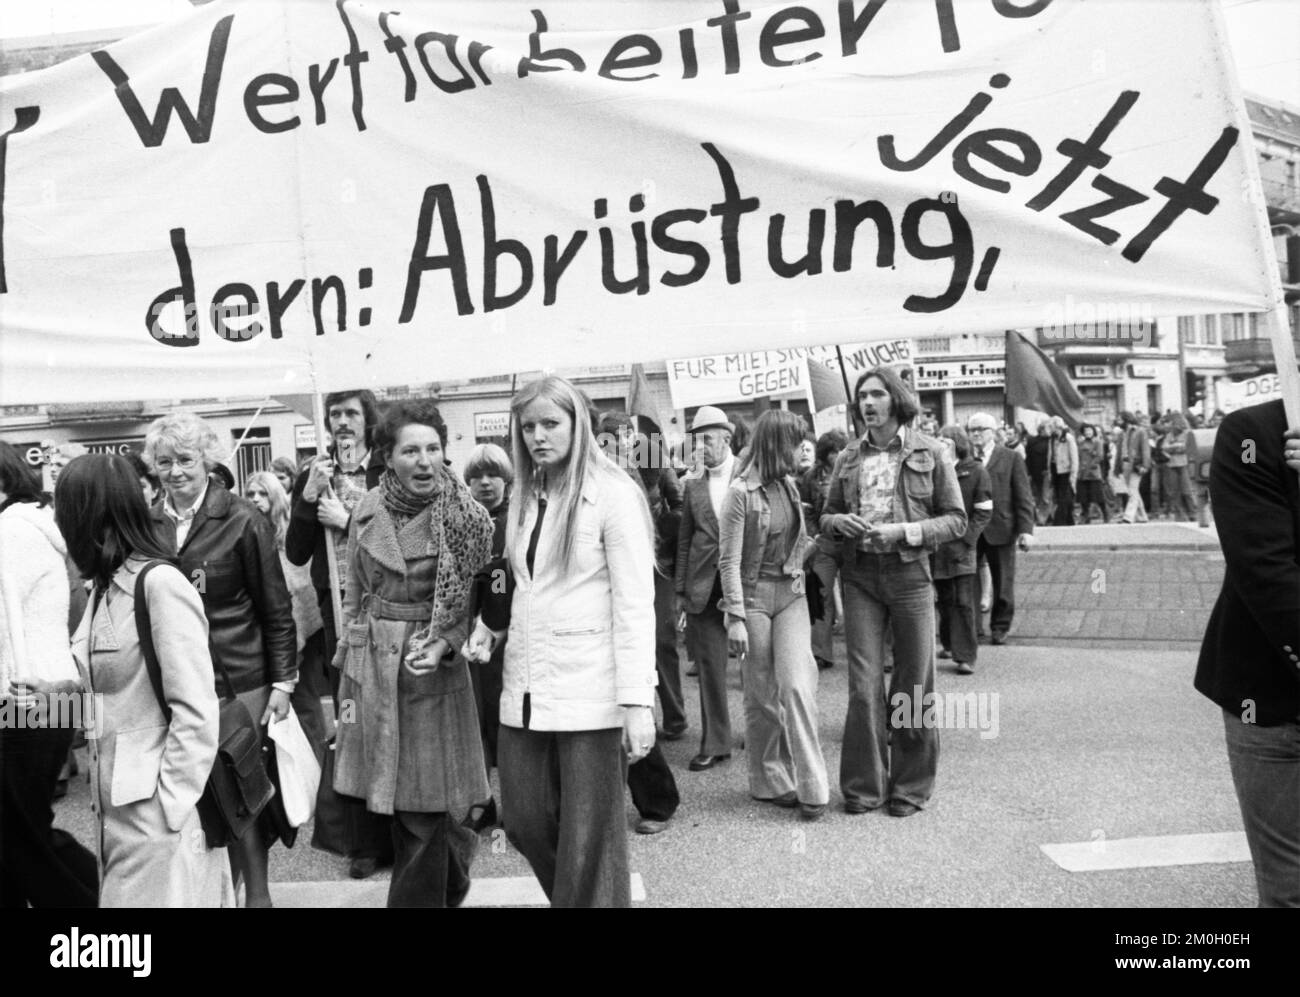 Die Hamburger DKP nutzte die Ehrung des kommunistischen Idols Ernst Thaelmann zu seinem 90.. Geburtstag, um eine Demonstration zu Fragen der Gegenwart, G, abzuhalten Stockfoto